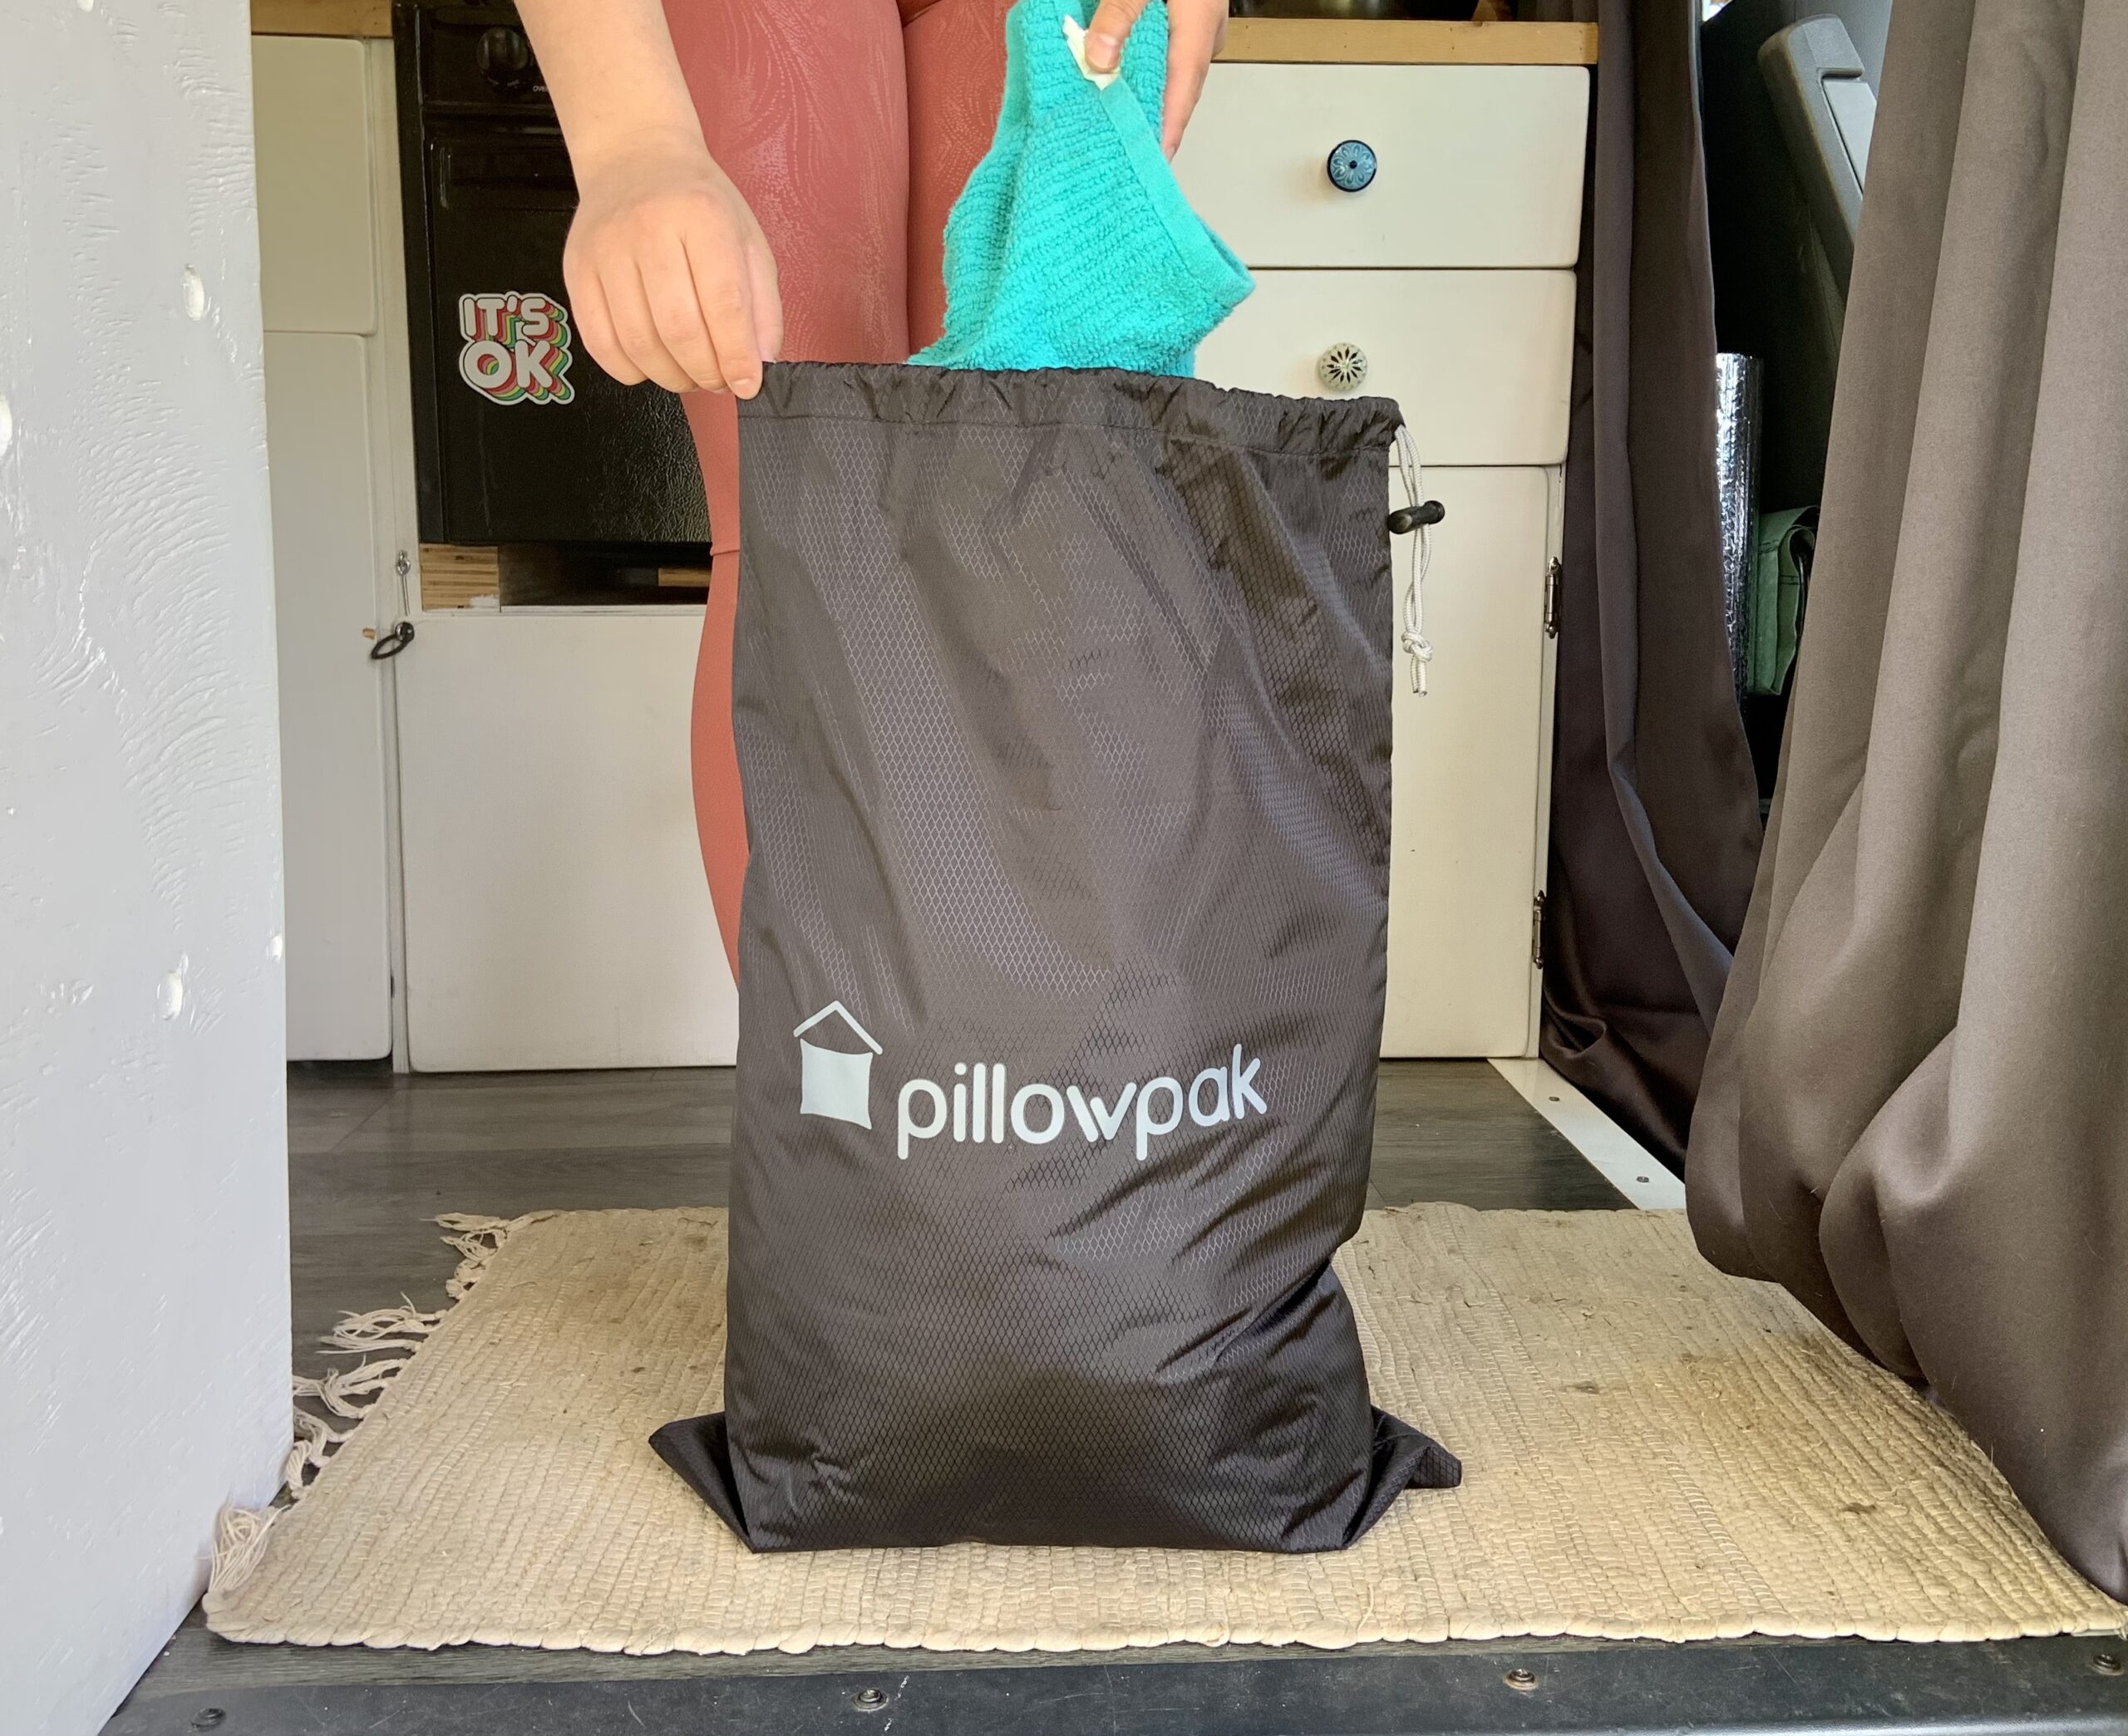 Pillowpak Utility Bag in Use